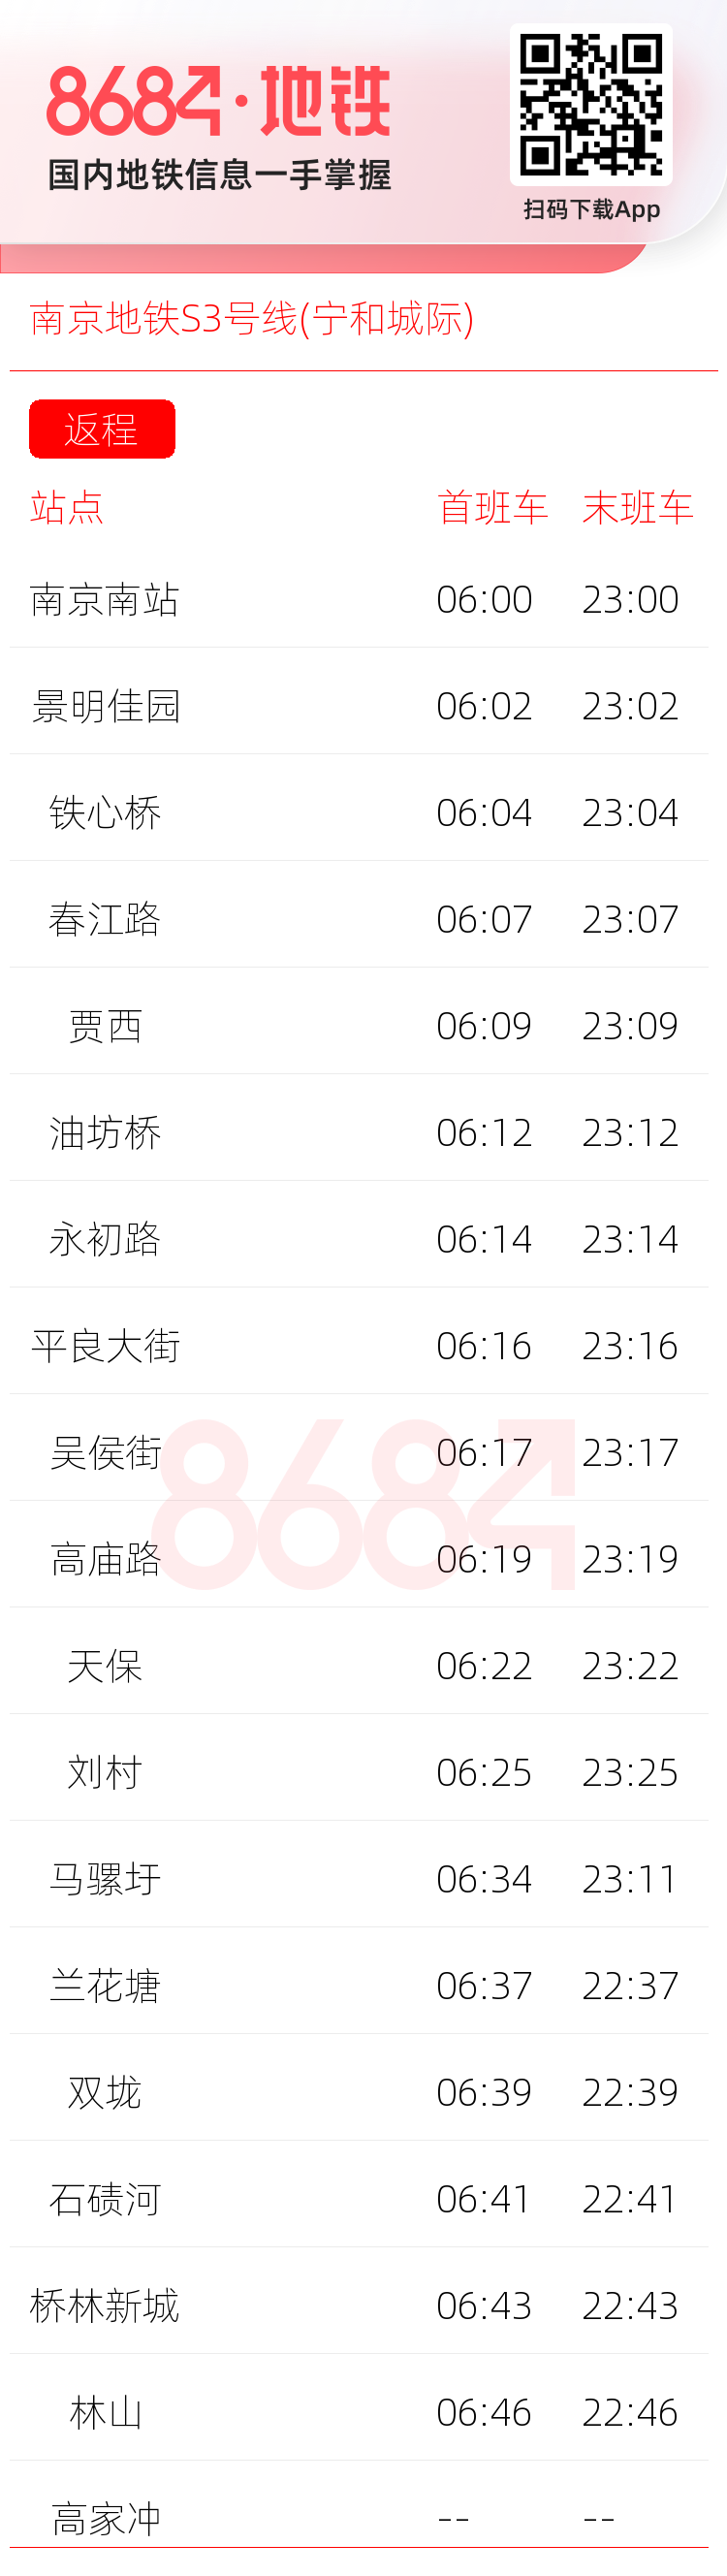 南京地铁S3号线(宁和城际)运营时间表